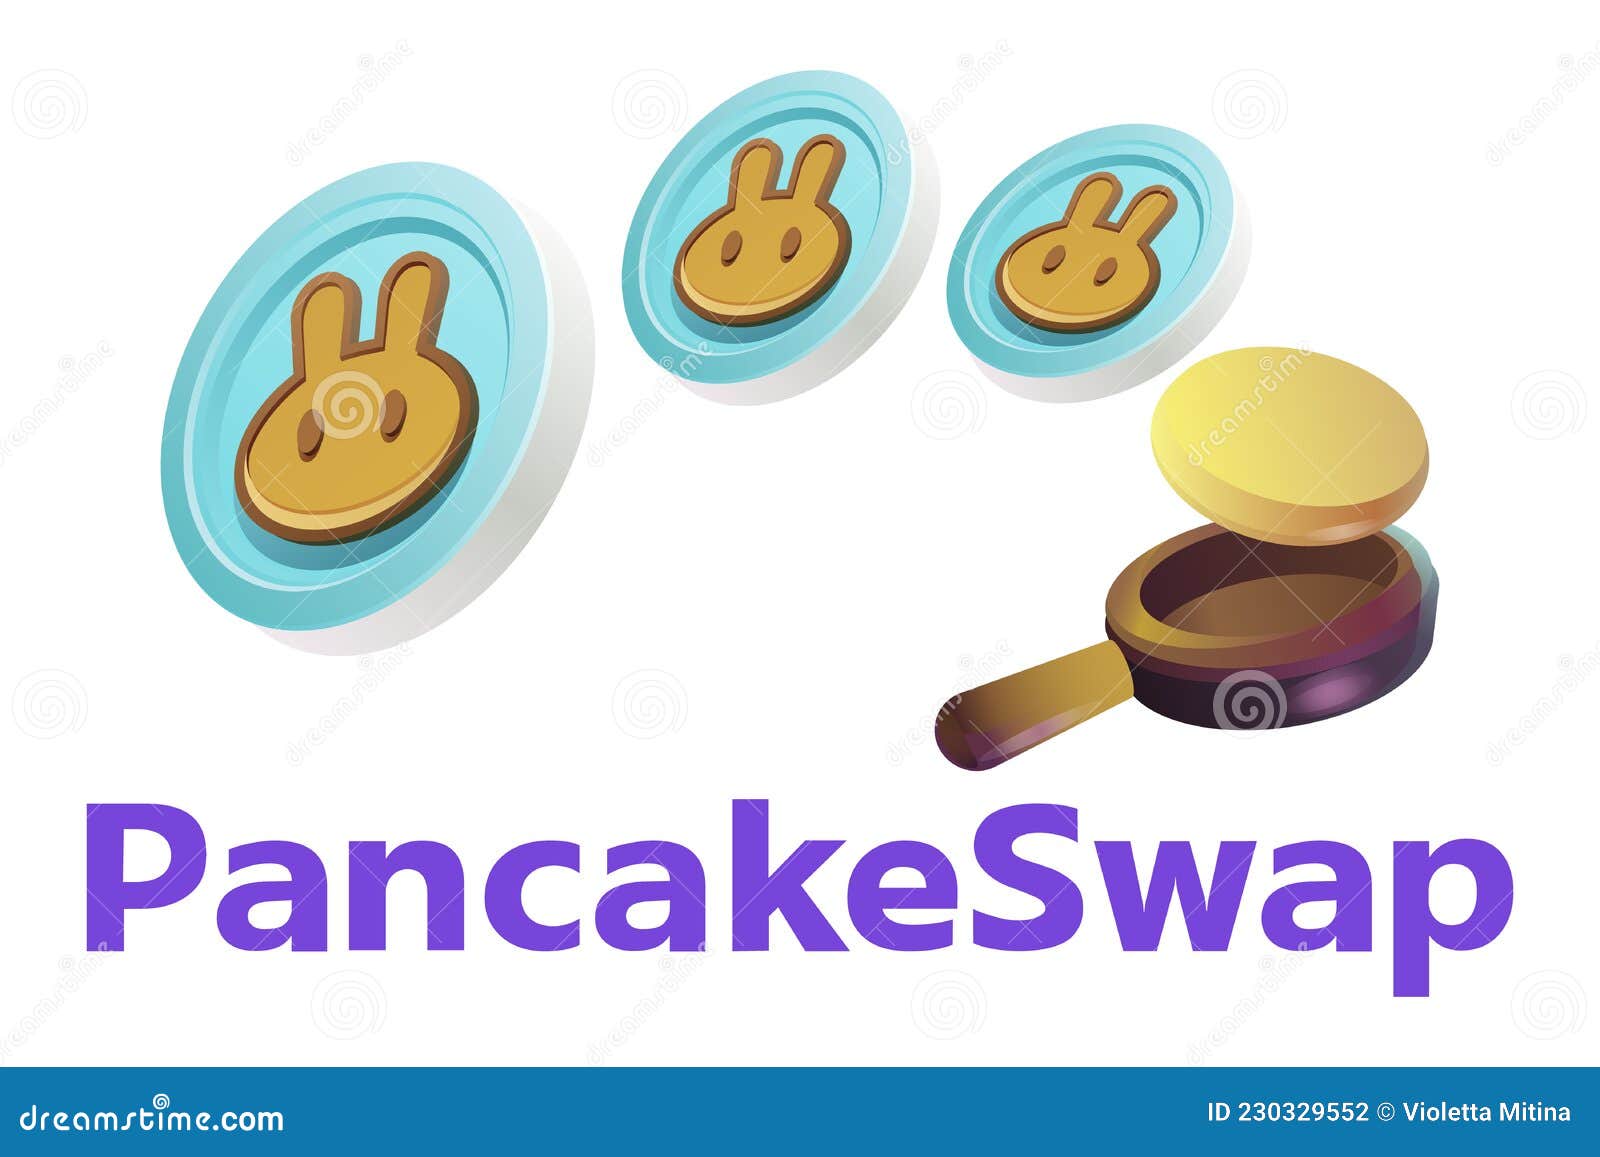 Pancakeswap How to